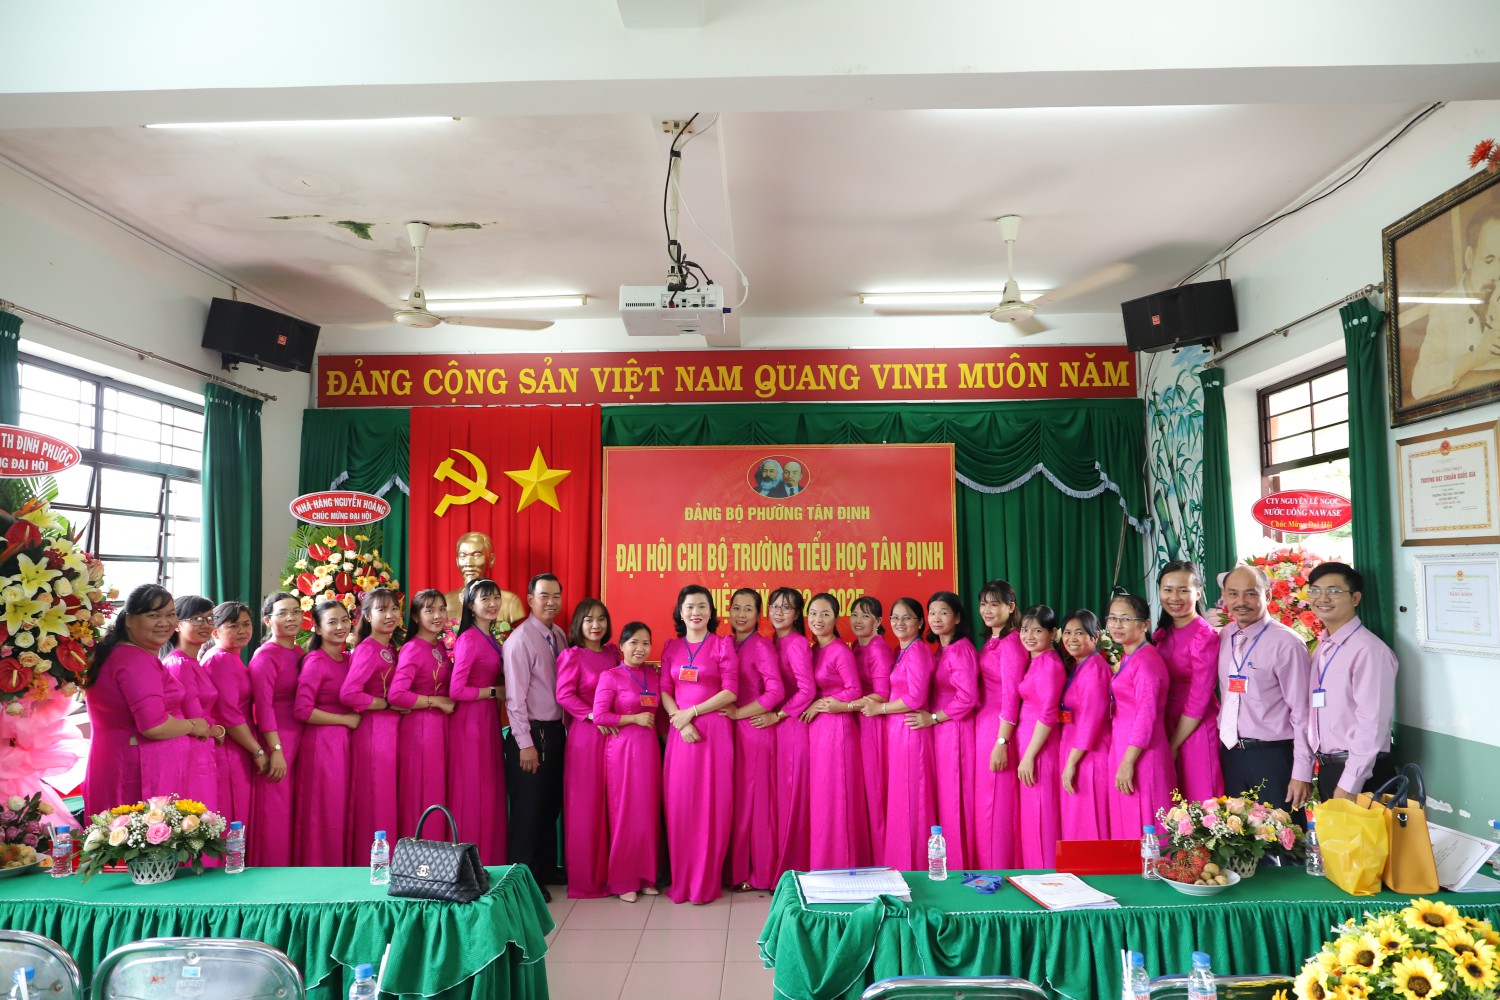 Đại hội Chi bộ Trường Tiểu học Tân Định nhiệm kỳ 2022-2025